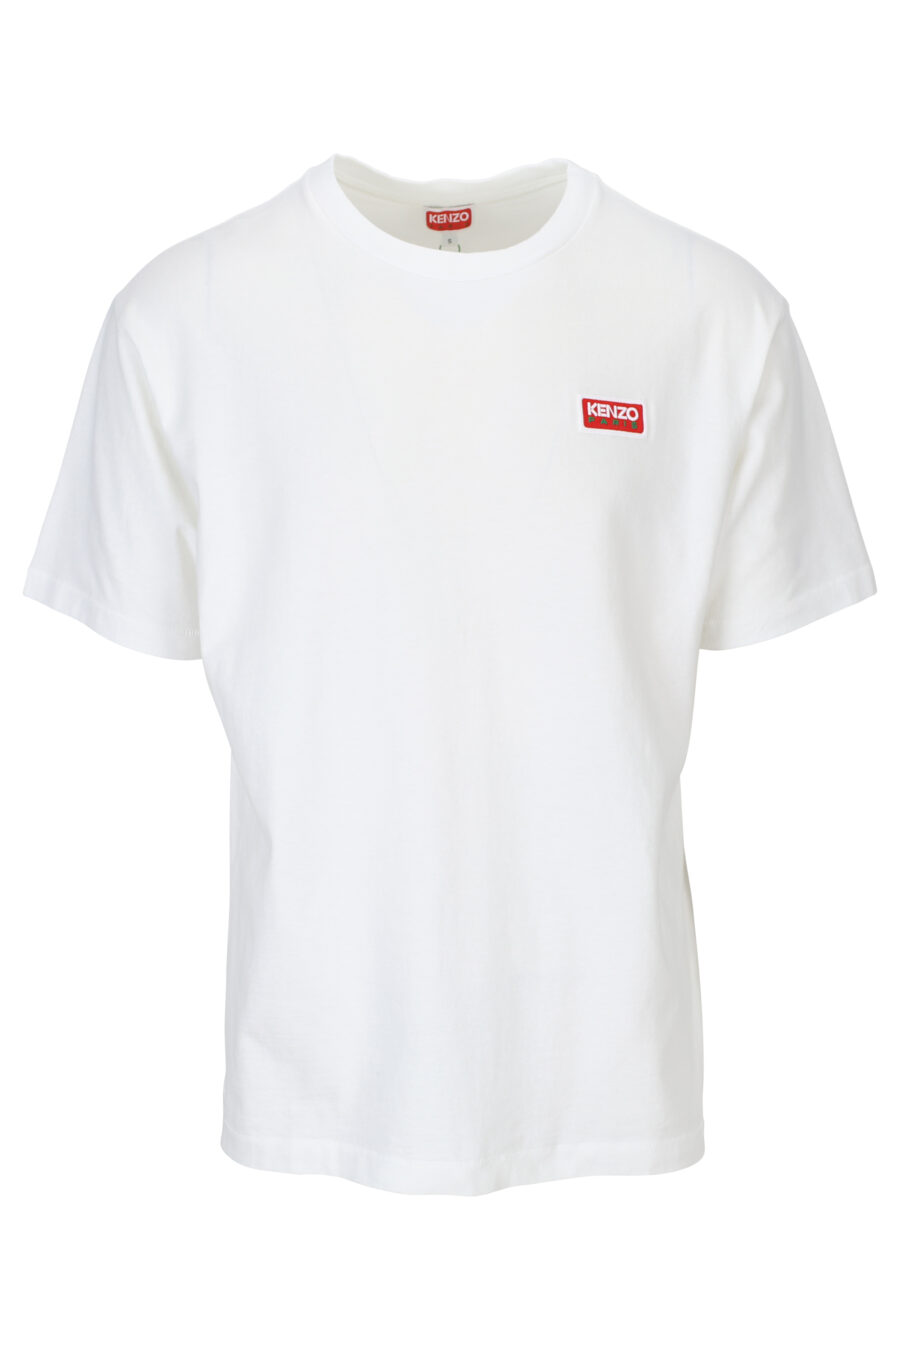 White t-shirt with "kenzo paris" maxilogo on the back - 3612230543140